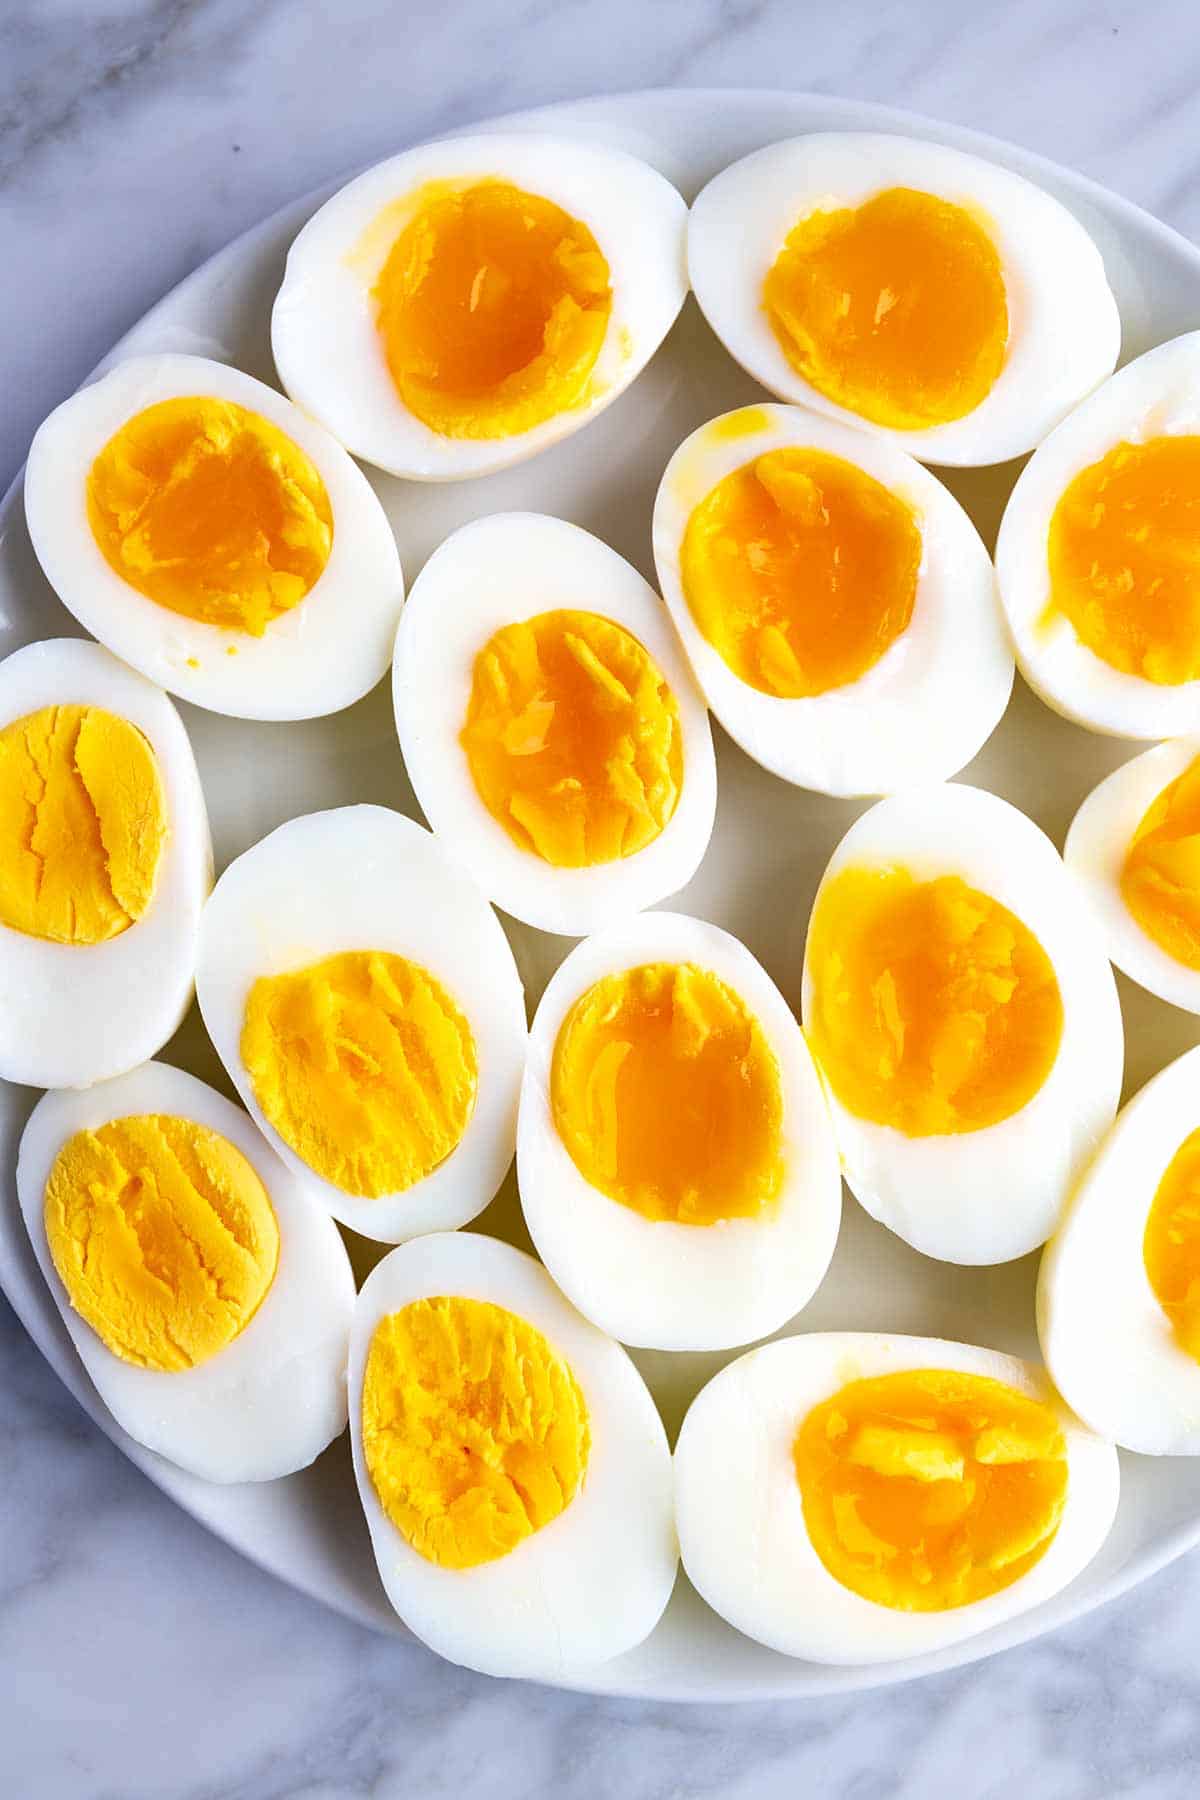 https://www.inspiredtaste.net/wp-content/uploads/2019/04/Easy-Instant-Pot-Hard-Boiled-Eggs-Recipe-1-1200.jpg